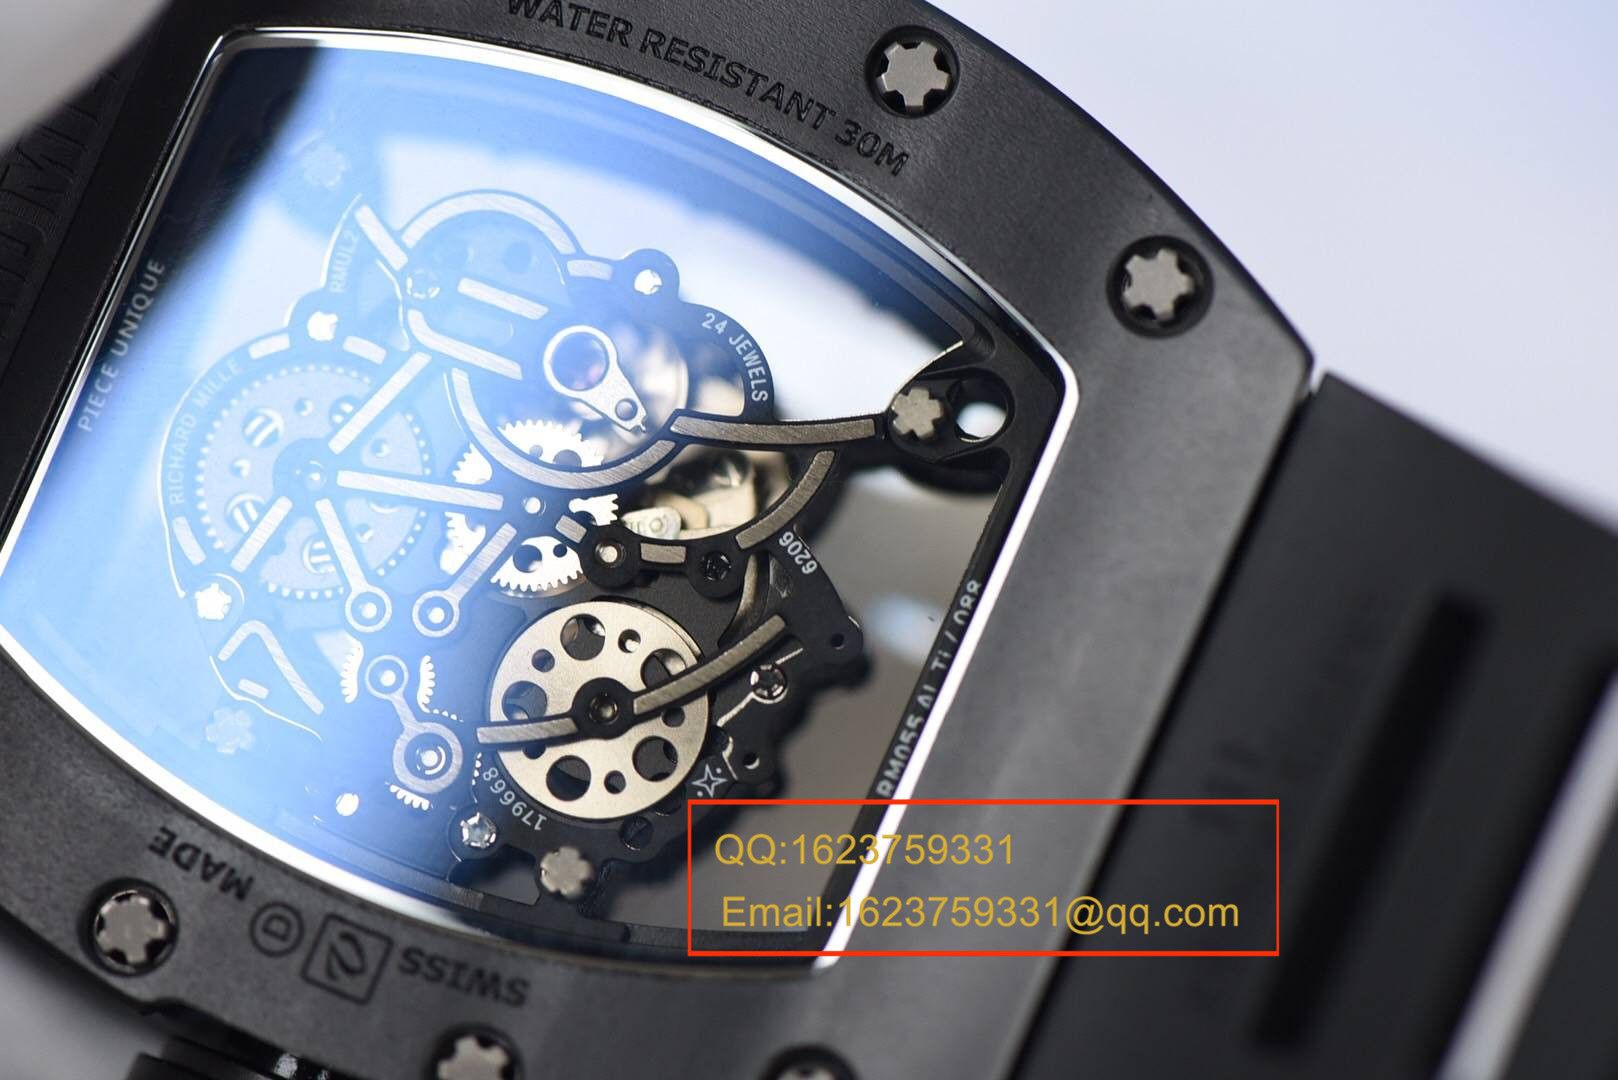 【独家视频评测KV一比一超A高仿手表】理查德.米勒RICHARD MILLE男士系列RM 055腕表 